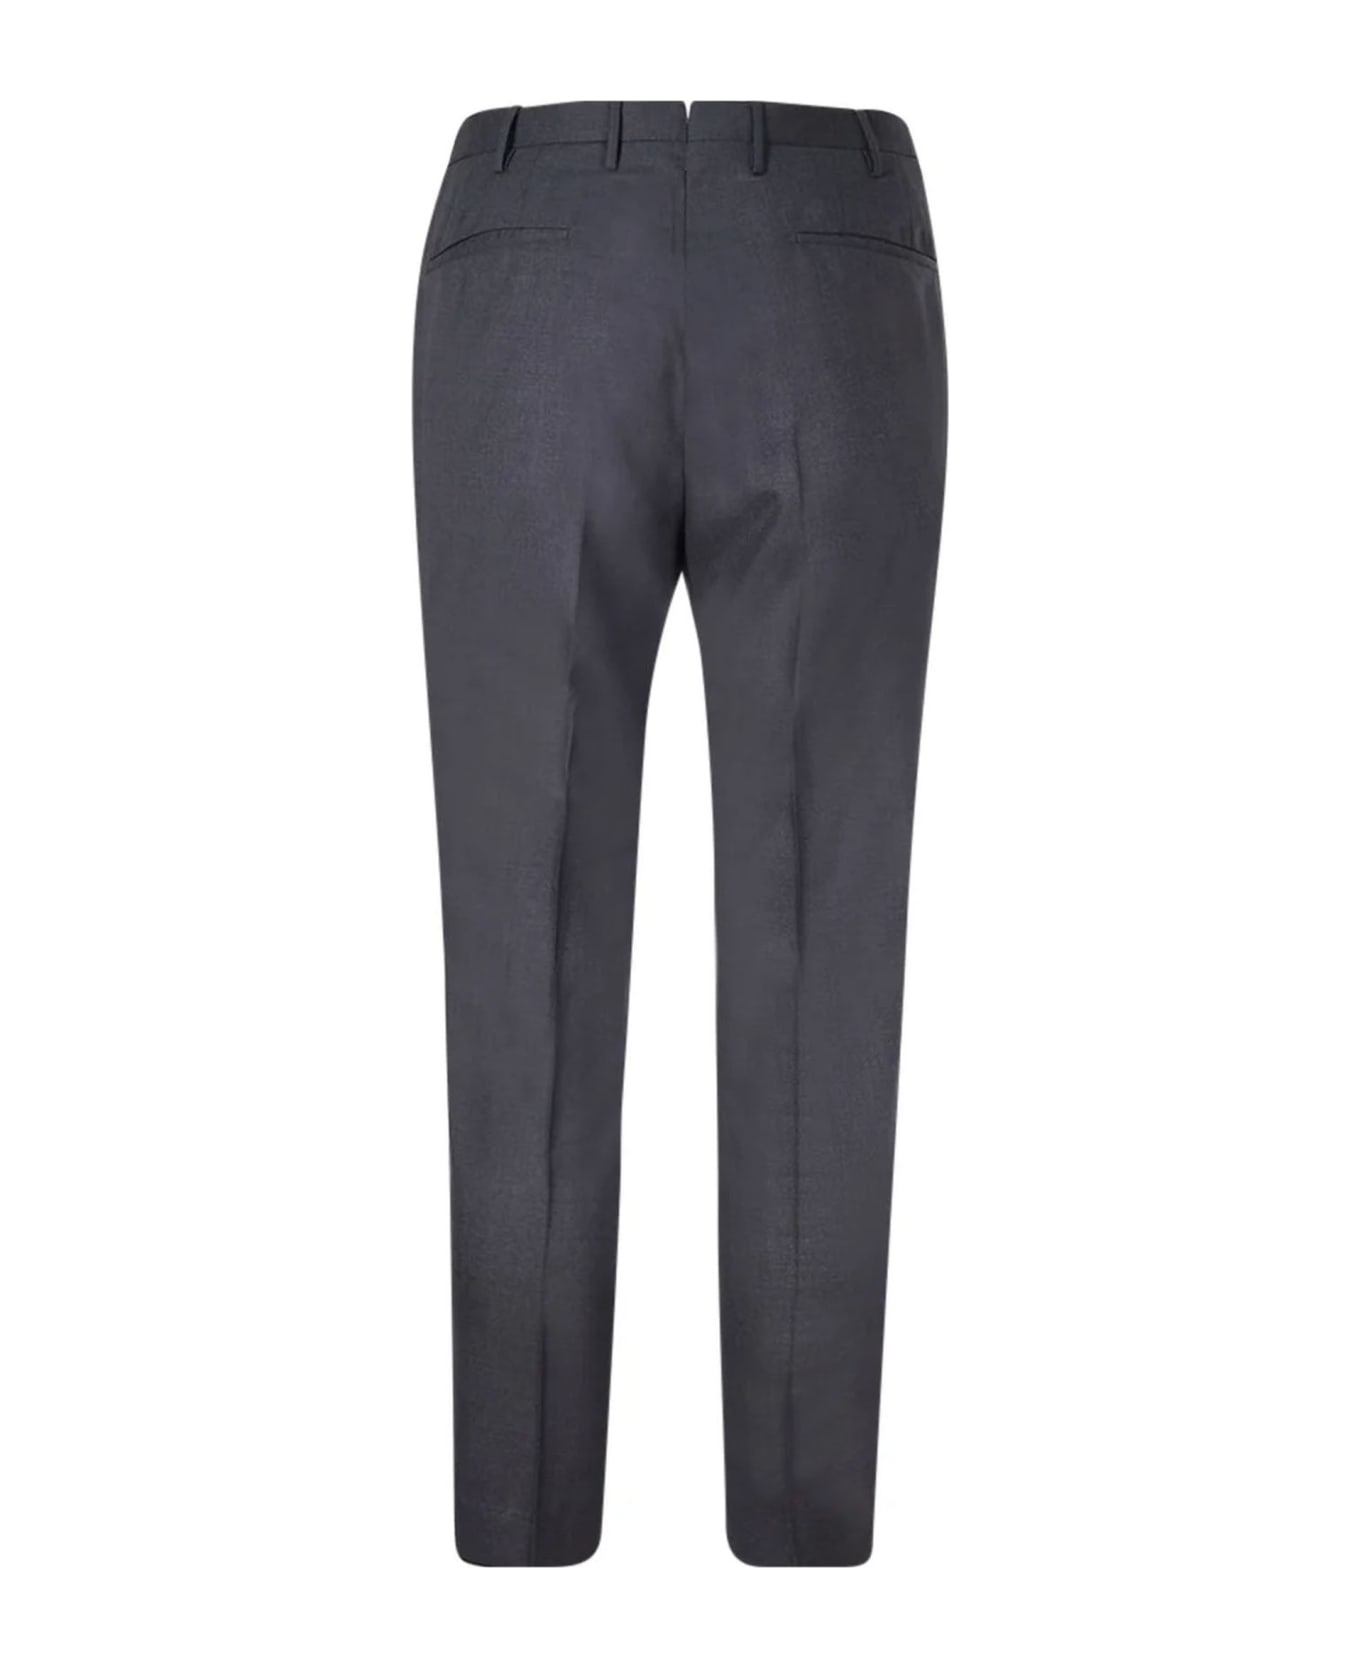 Incotex Dark Grey Virgin Wool Chino Trousers - Grey